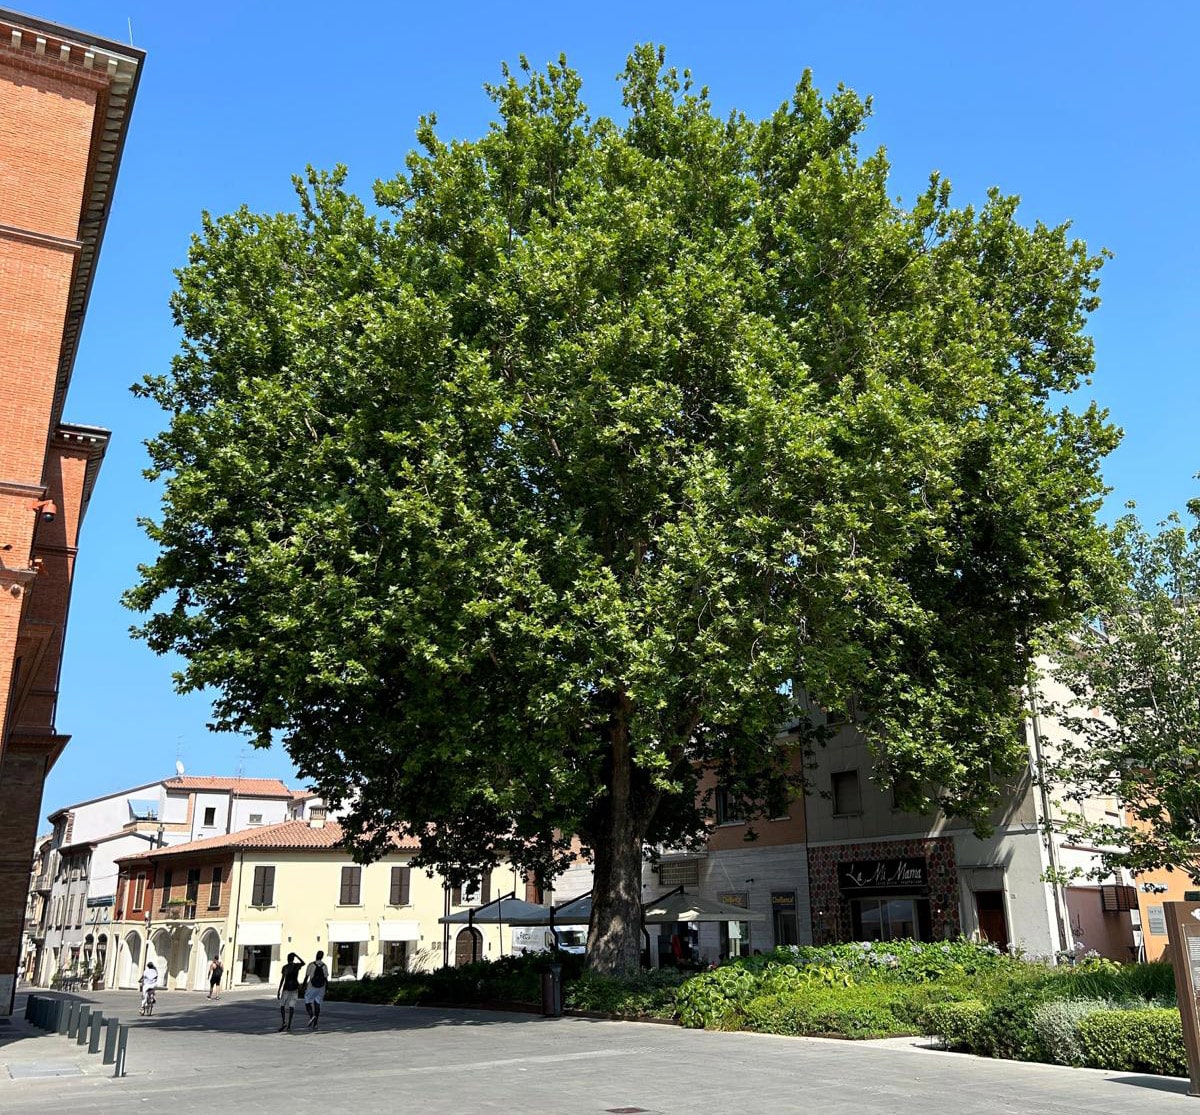 La Regione redige la lista degli alberi monumentali e si scopre che Rimini non ne ha nemmeno uno ufficialmente riconosciuto